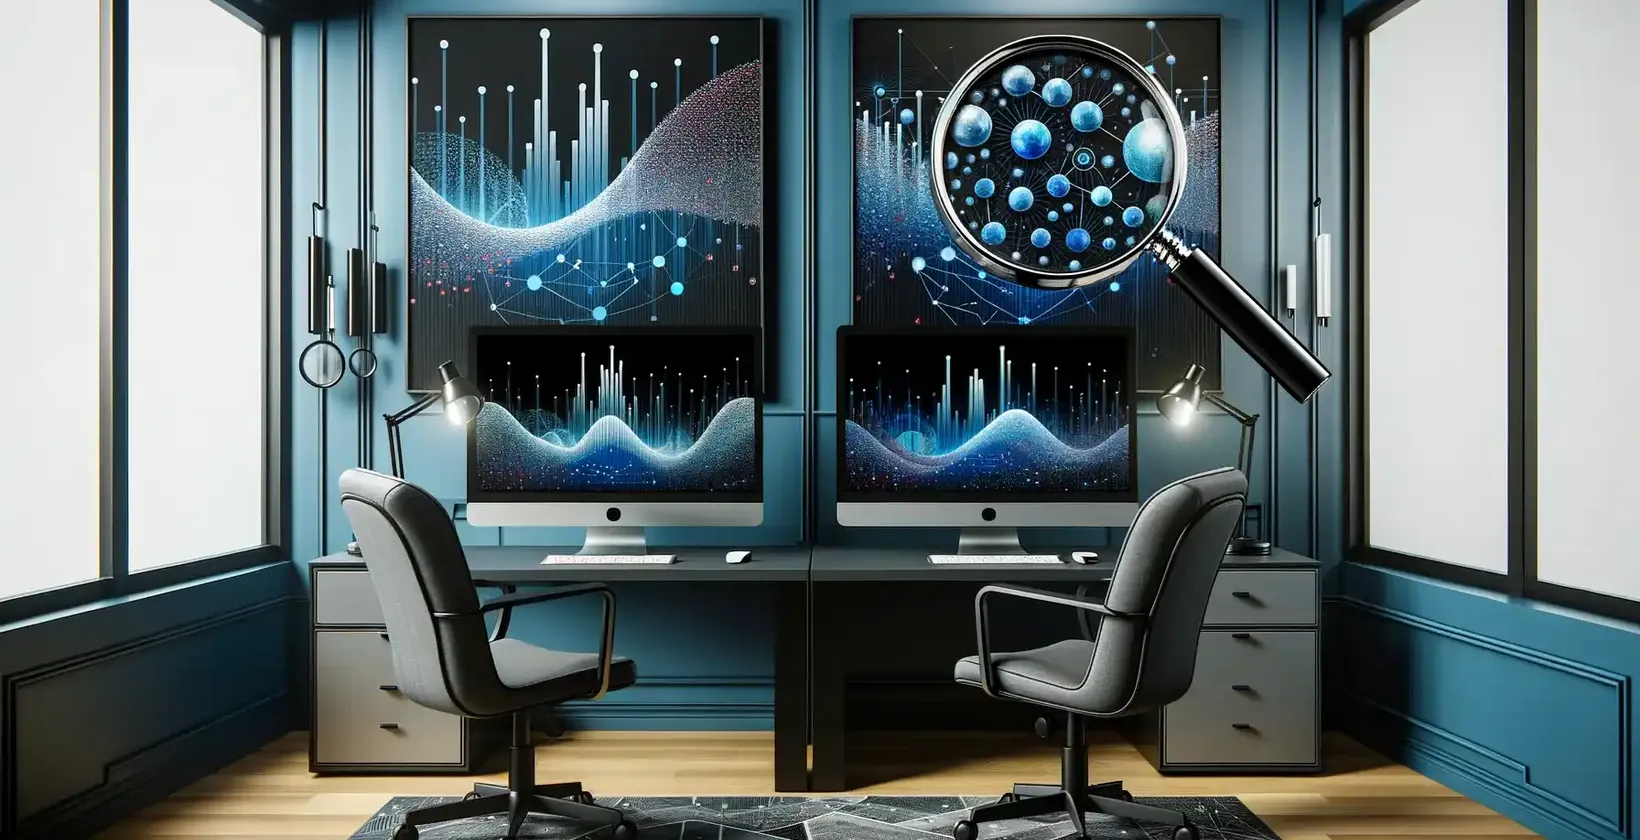 Un bureau sophistiqué avec plusieurs écrans d'ordinateur affichant des graphiques détaillés et des structures moléculaires.